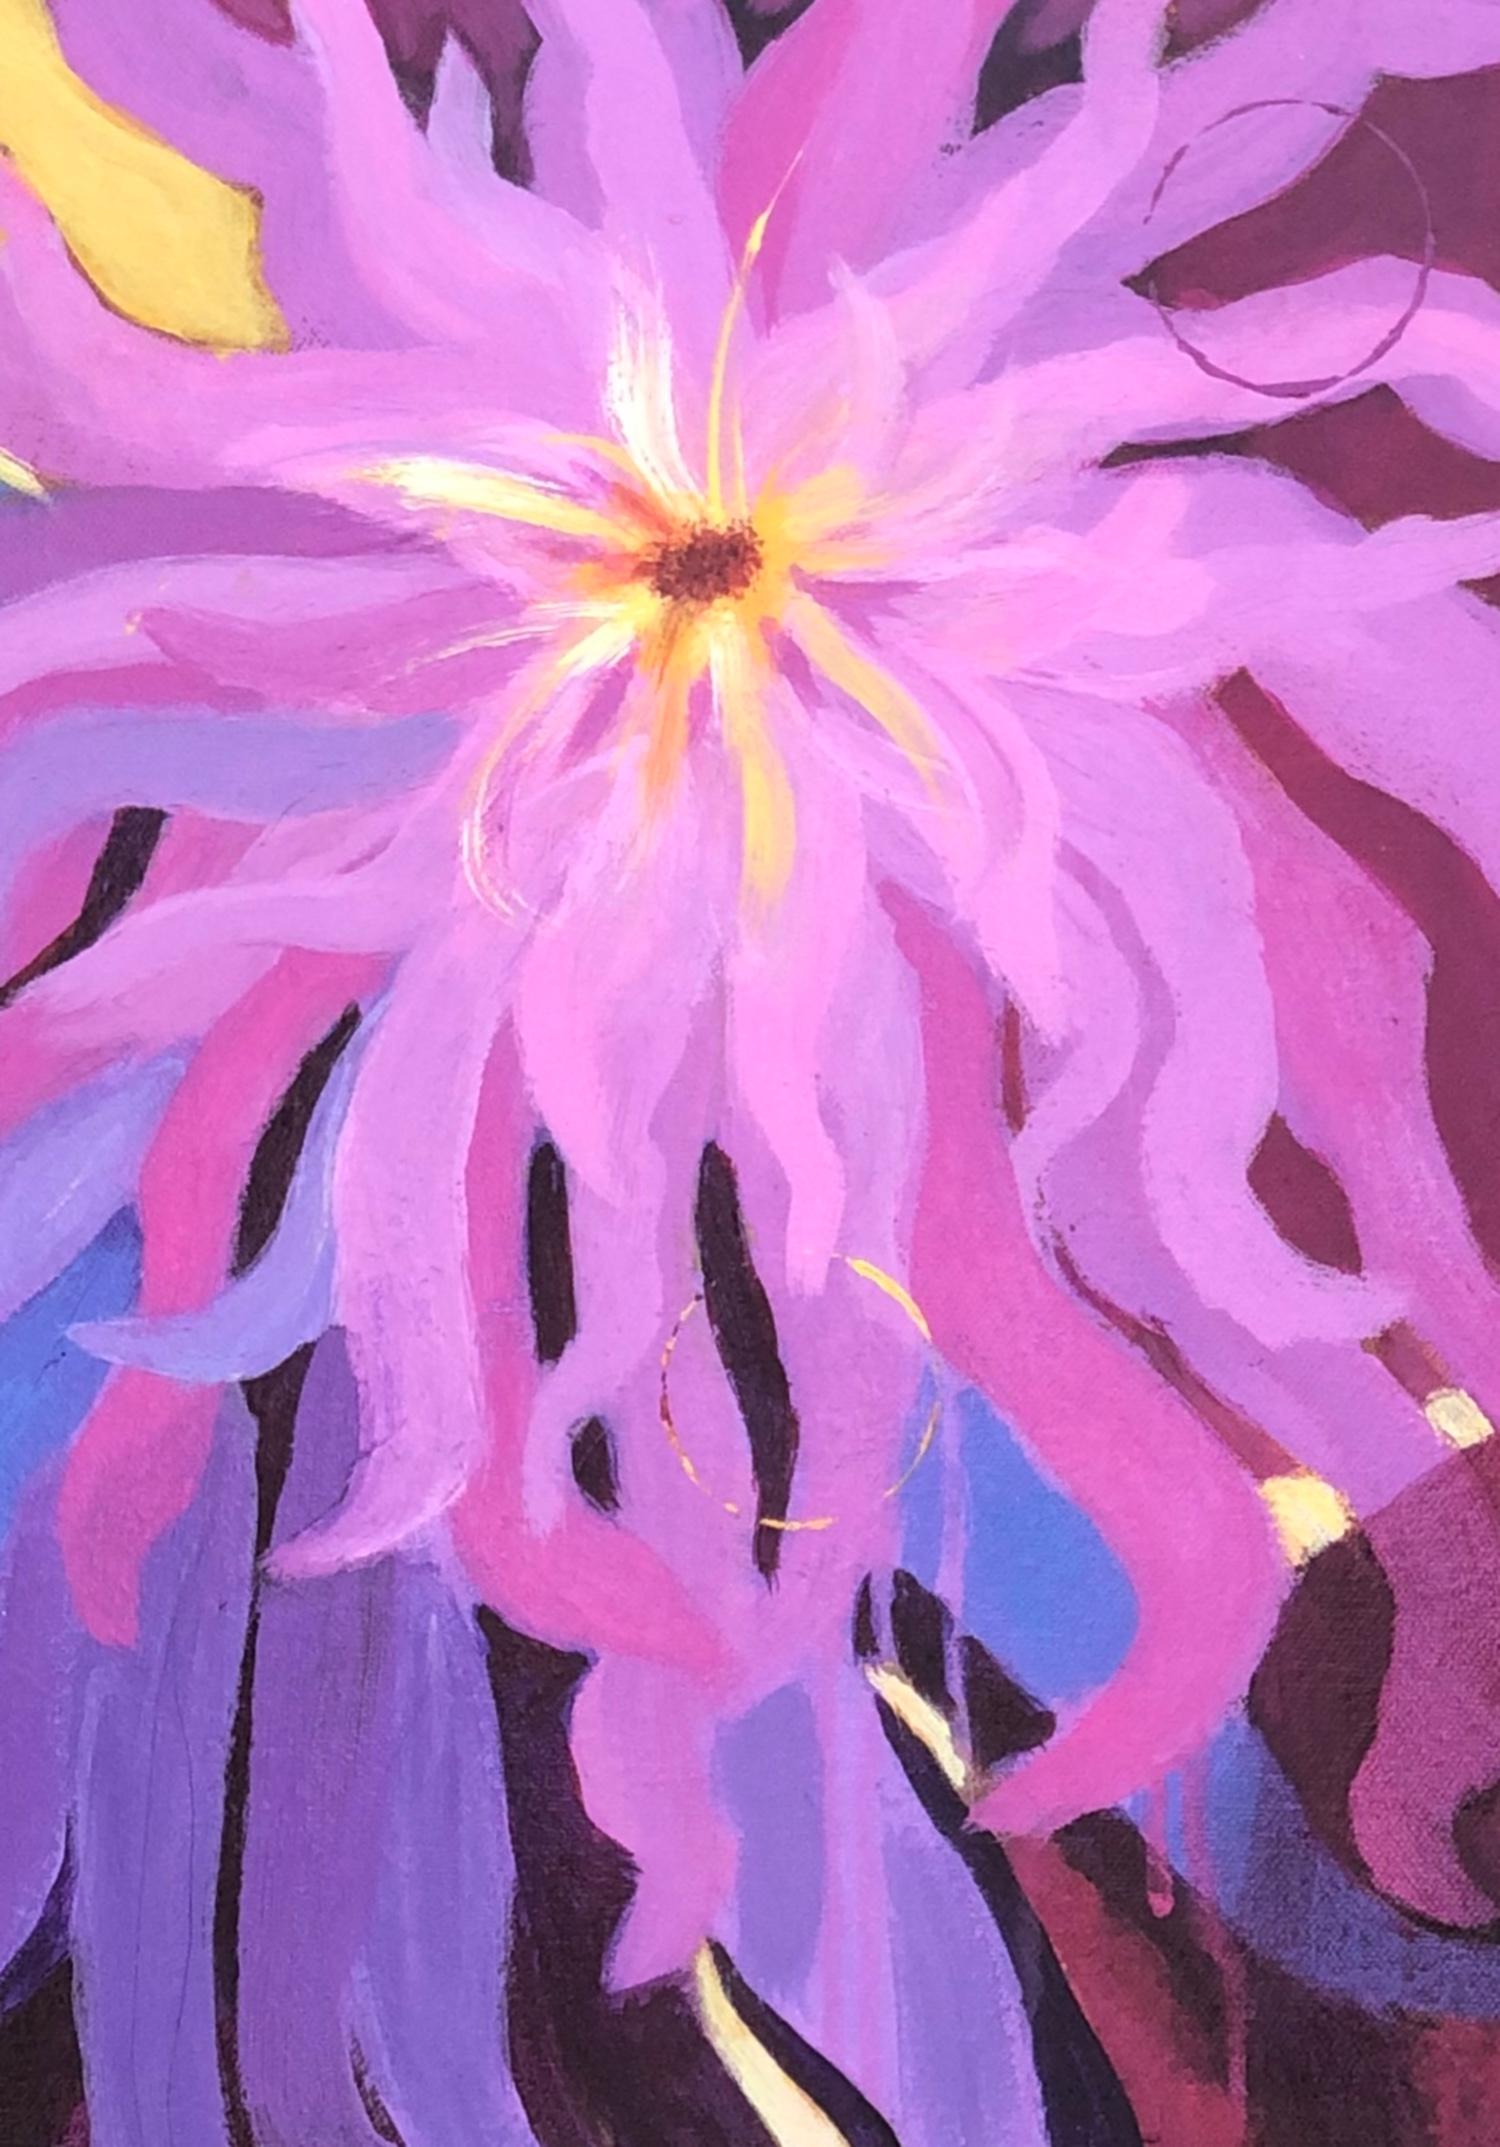 <p>Kommentare der Künstlerin<br>Die Künstlerin Jodi Dann zeigt einen Blick auf leuchtend rosa Dahlien. Weinblasen schweben im Hintergrund, während die blühenden Blumen gedeihen. 